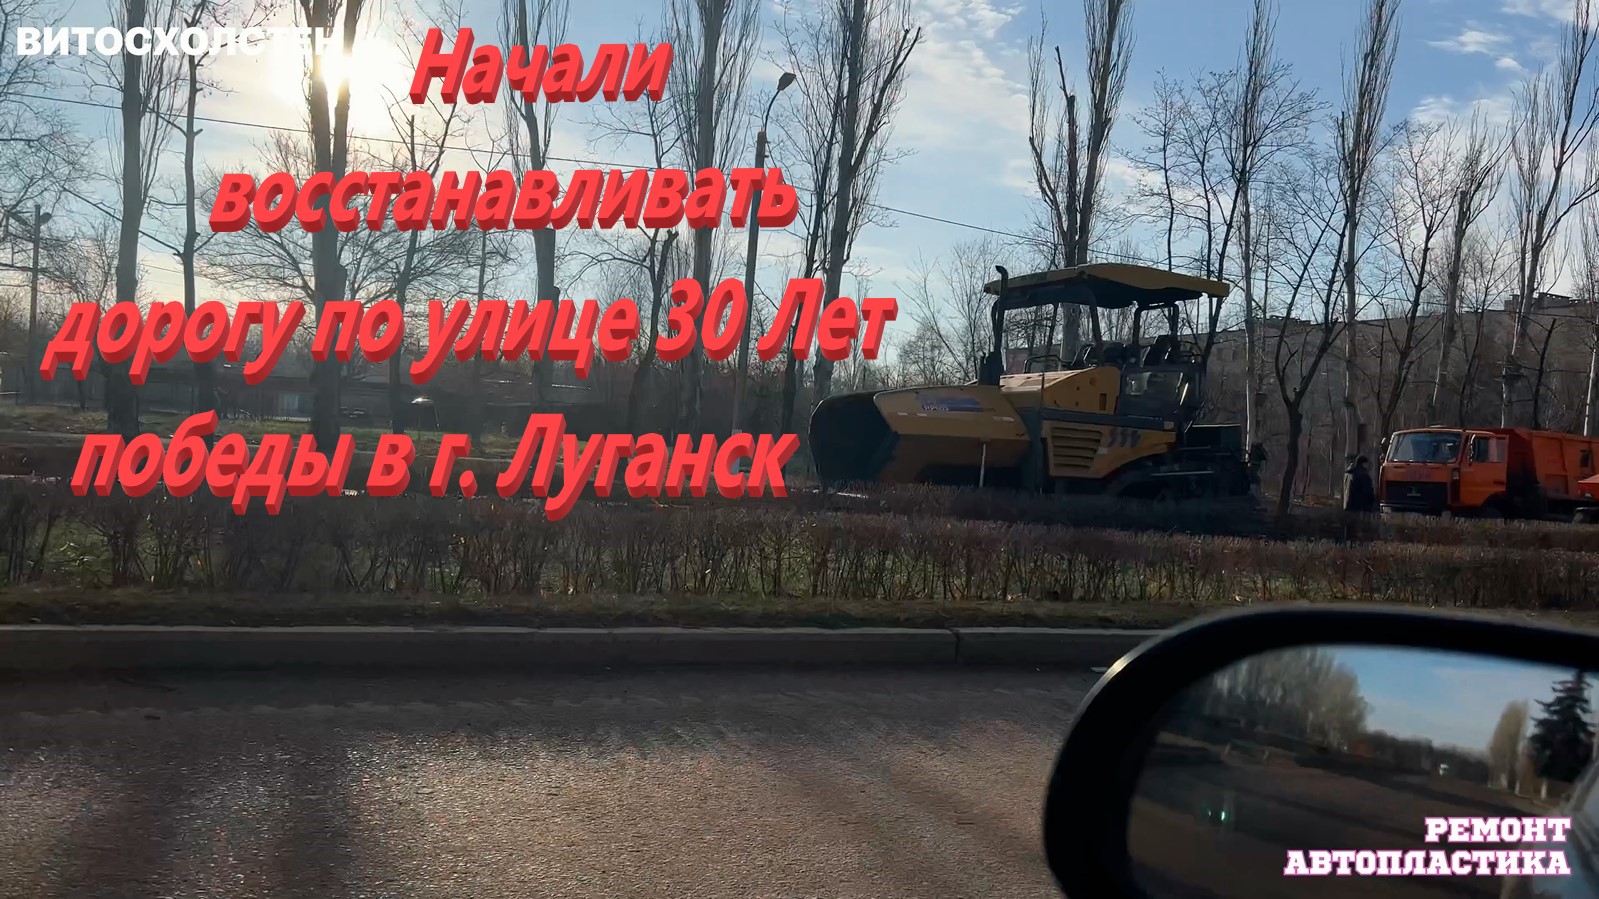 Начали восстанавливать дорогу по улице 30 Лет победы в г. Луганск